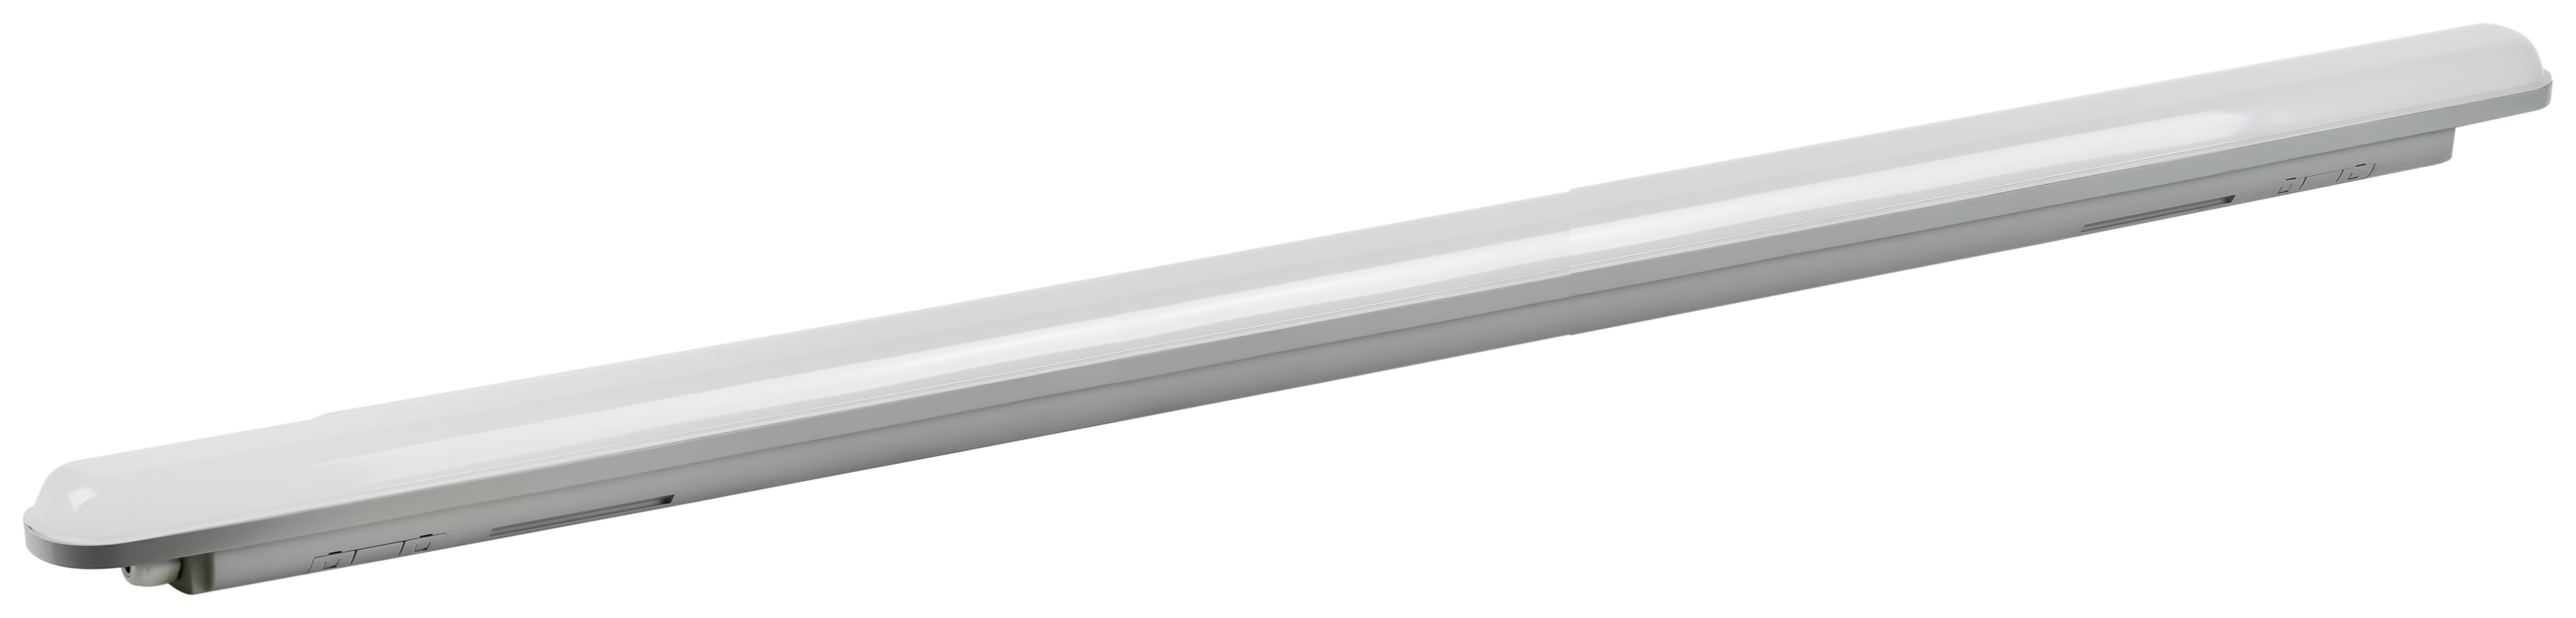 Линейный светодиодный светильник ЭРА SPP-201-0-65K-066 66Вт 6500K 8050Лм IP65 1500мм матовый